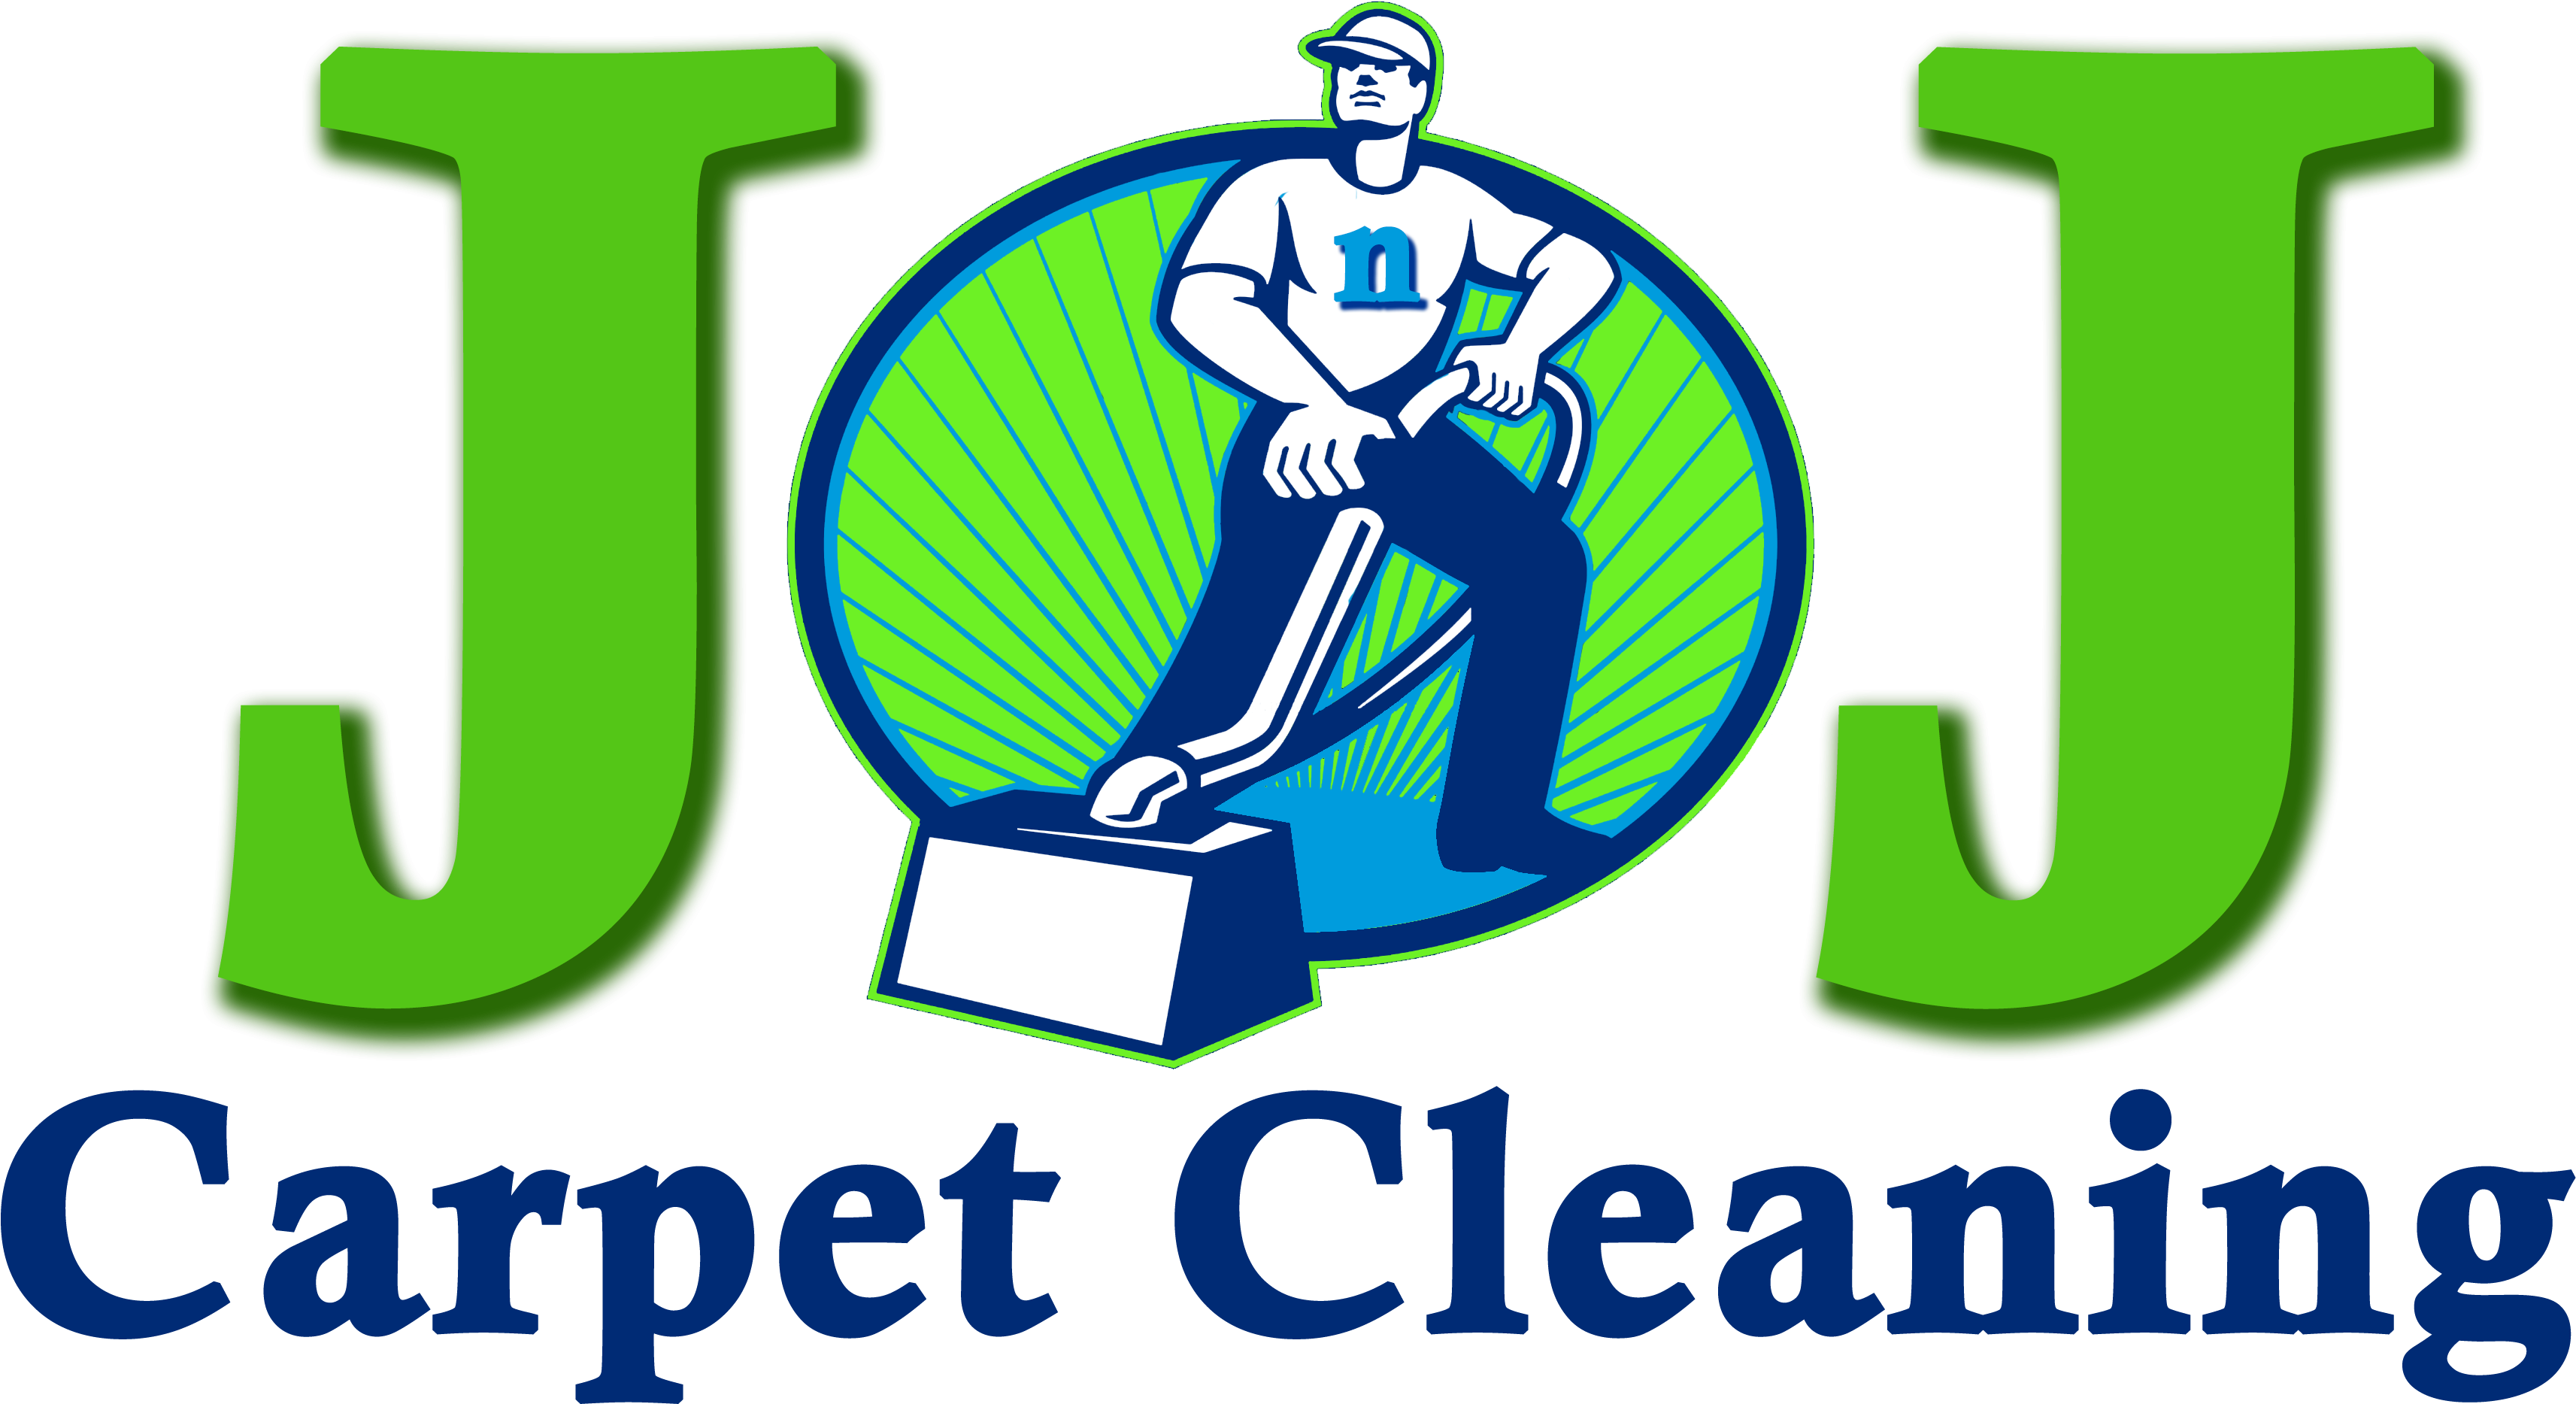 A Logo Of A Man Vacuuming A Box